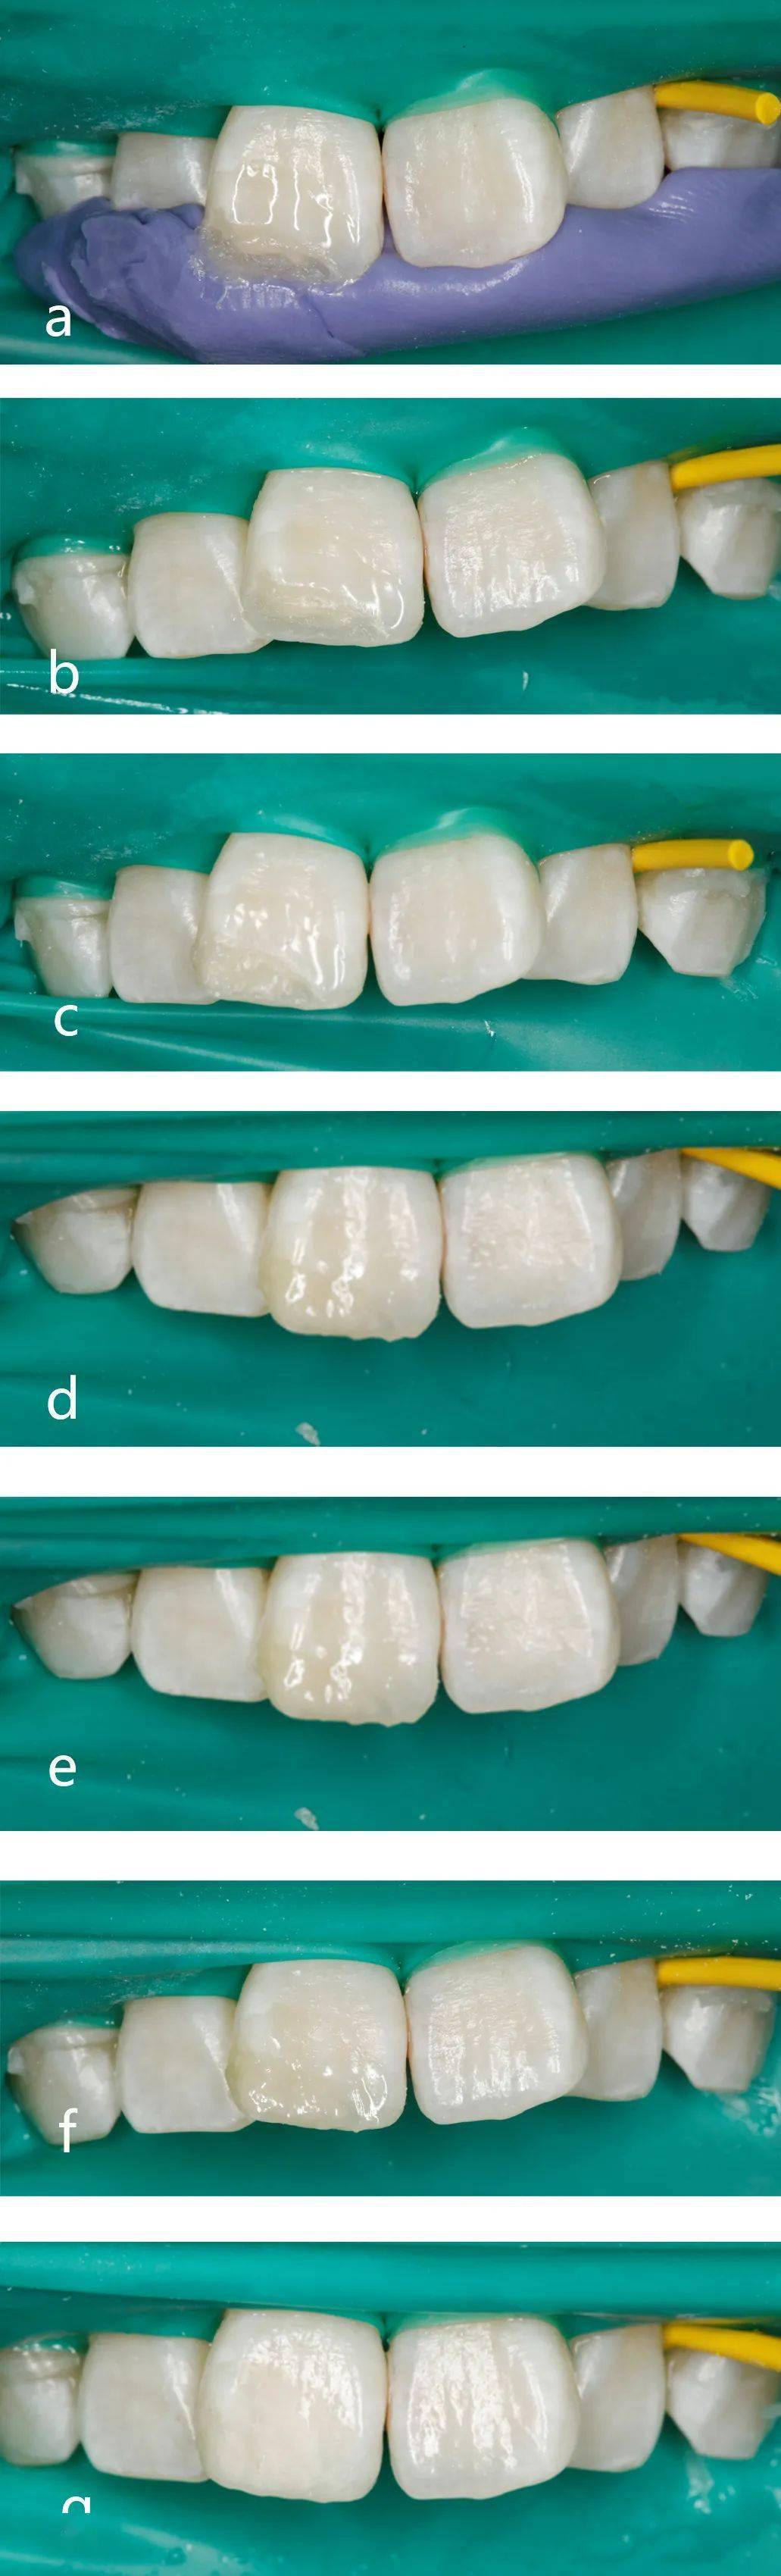 前牙缺损的微创美学树脂直接修复病例